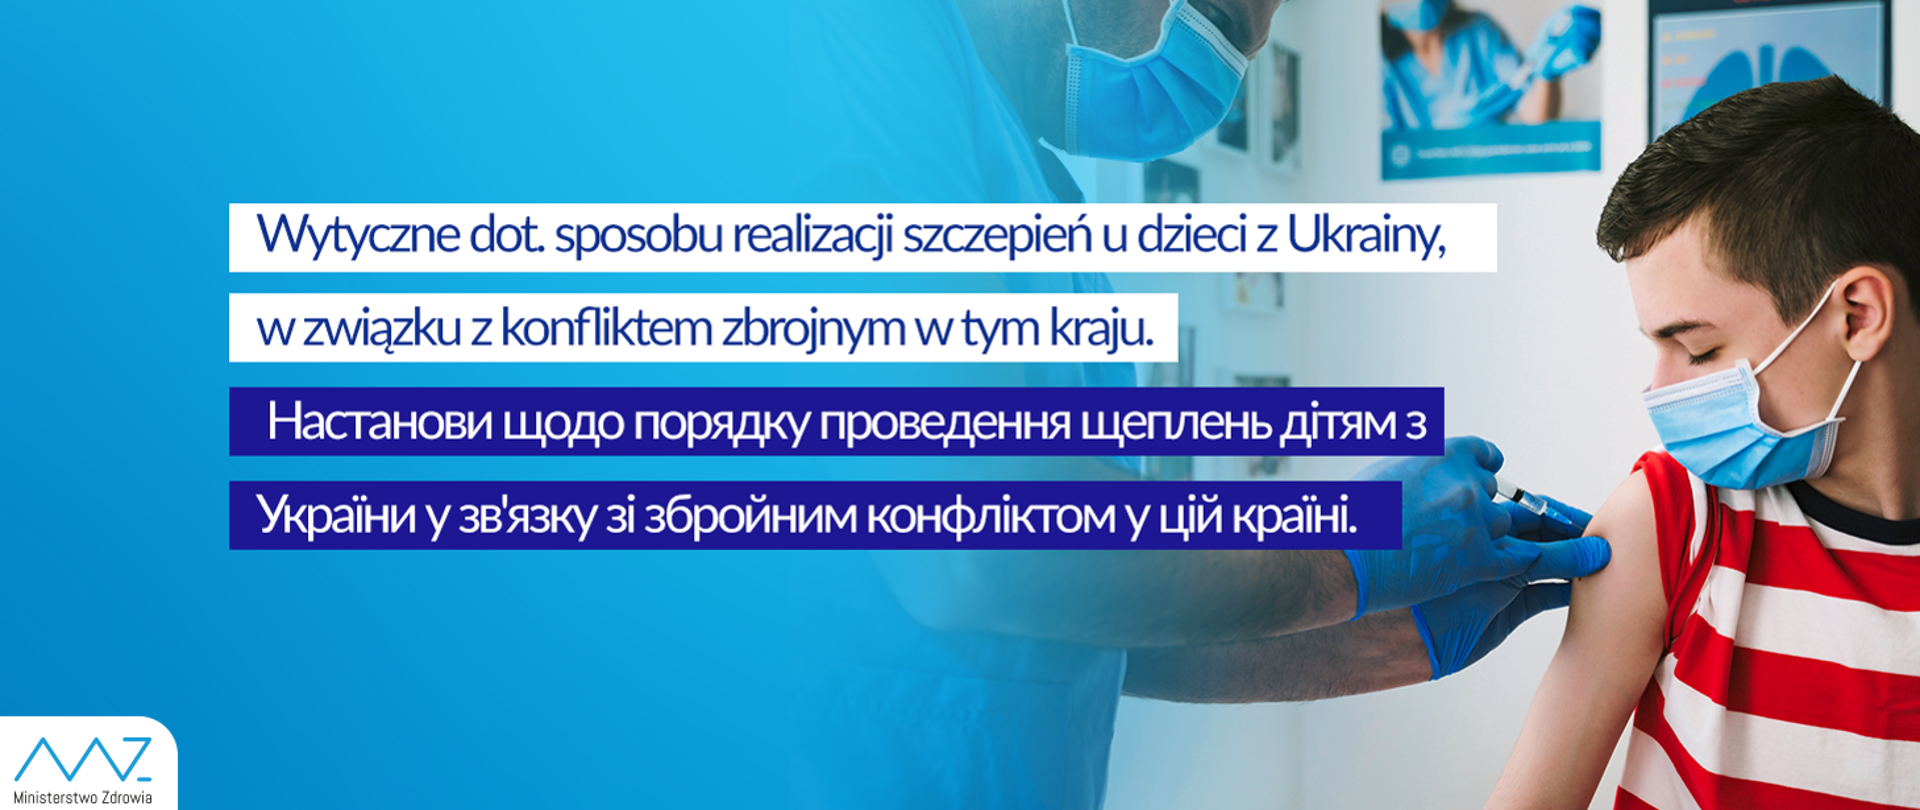 Wytyczne dot. sposobu realizacji szczepień dzieci z Ukrainy, w związku z konfliktem zbrojnym w tym kraju. 